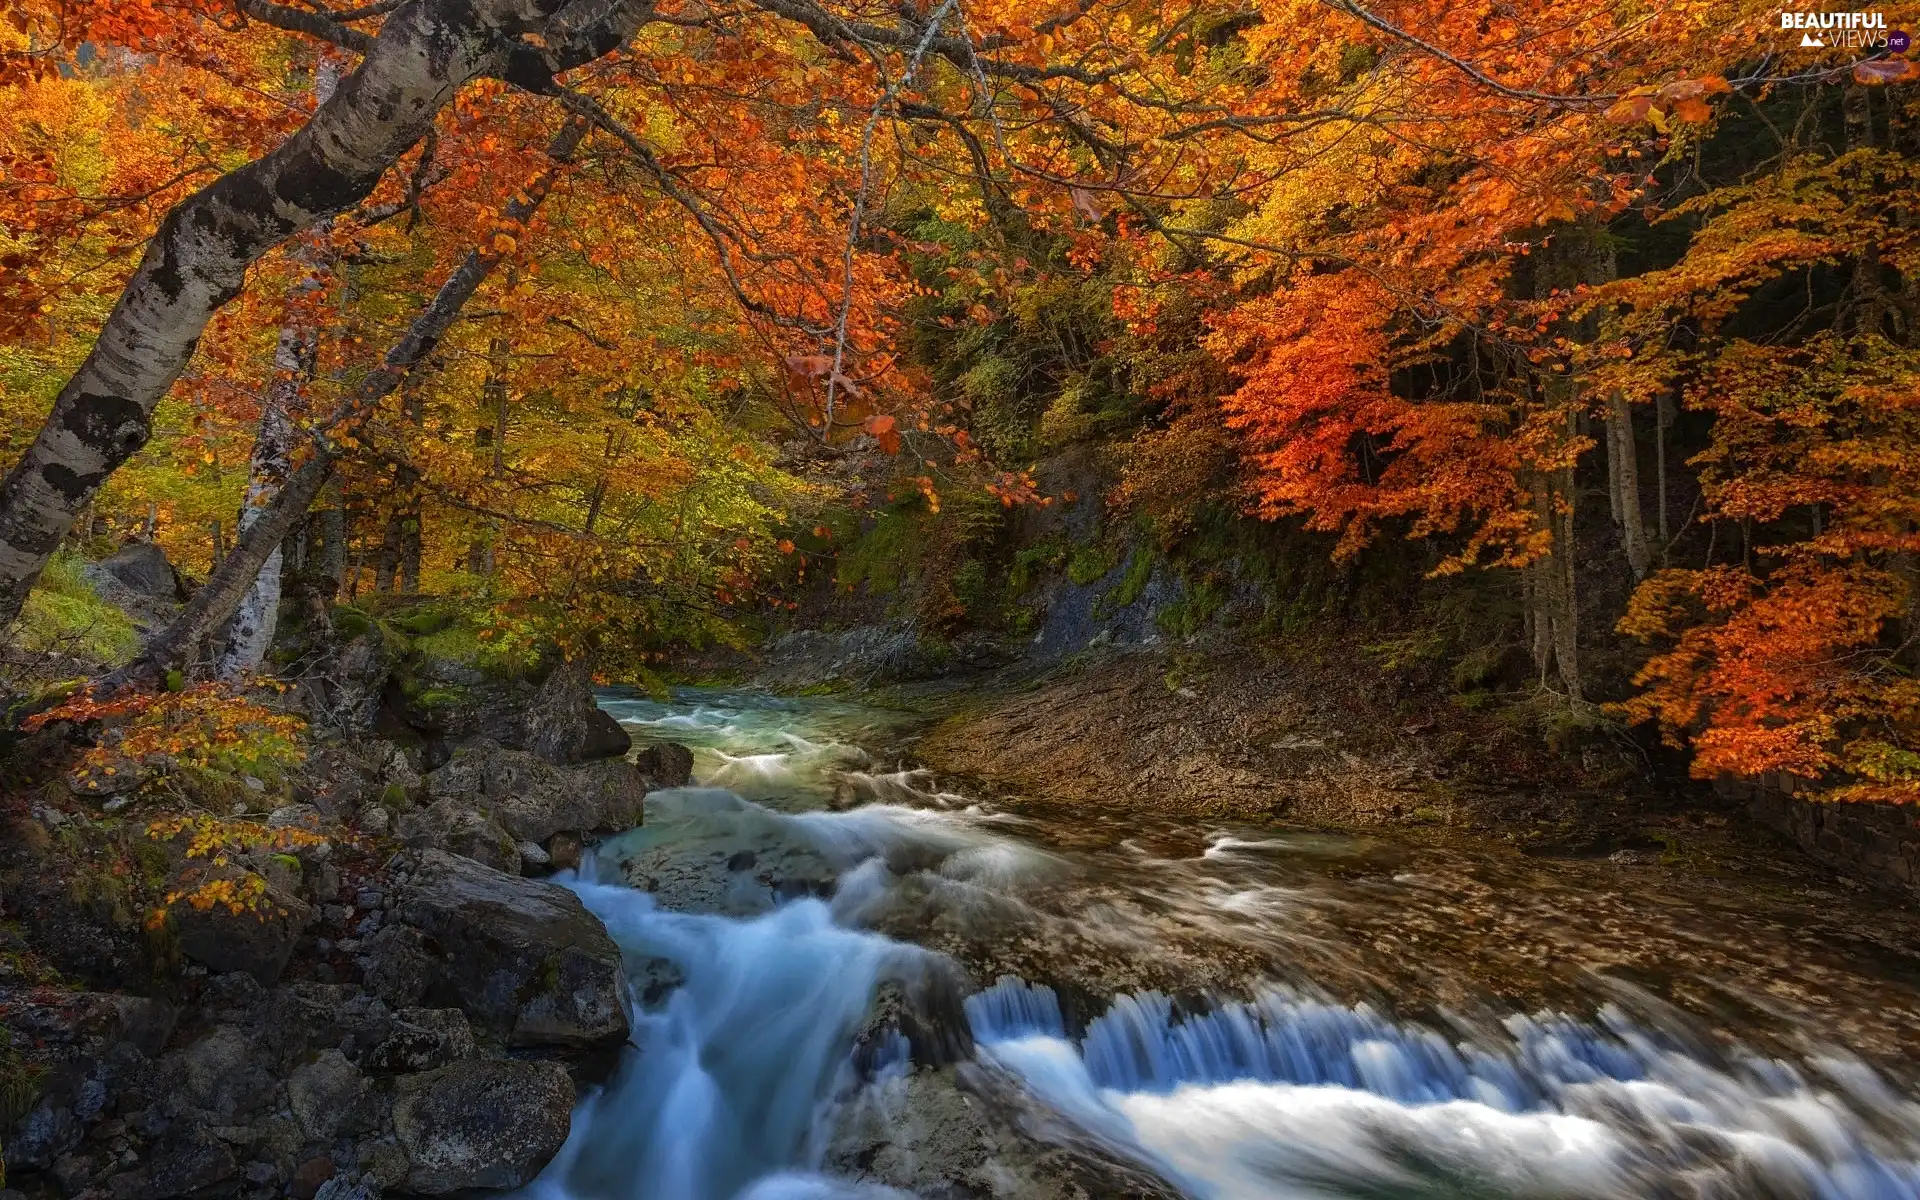 rapid, autumn, Stones, River, stream, forest